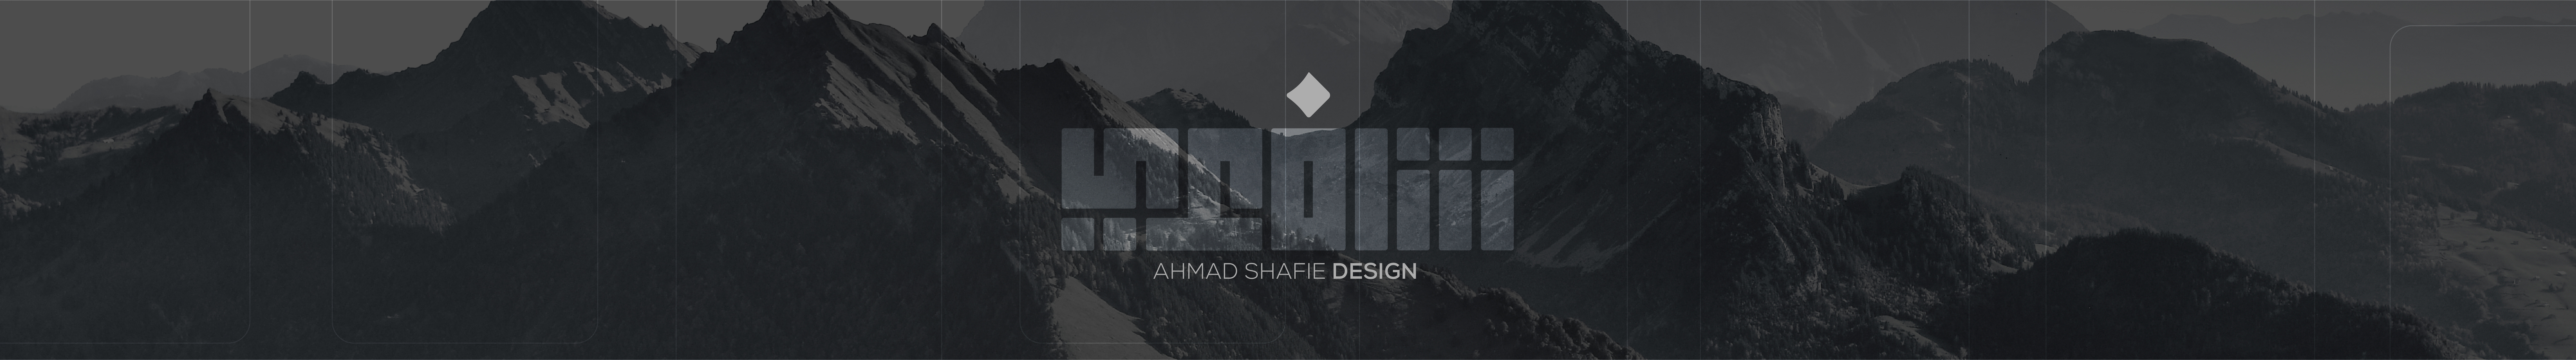 Баннер профиля ahmad shafie